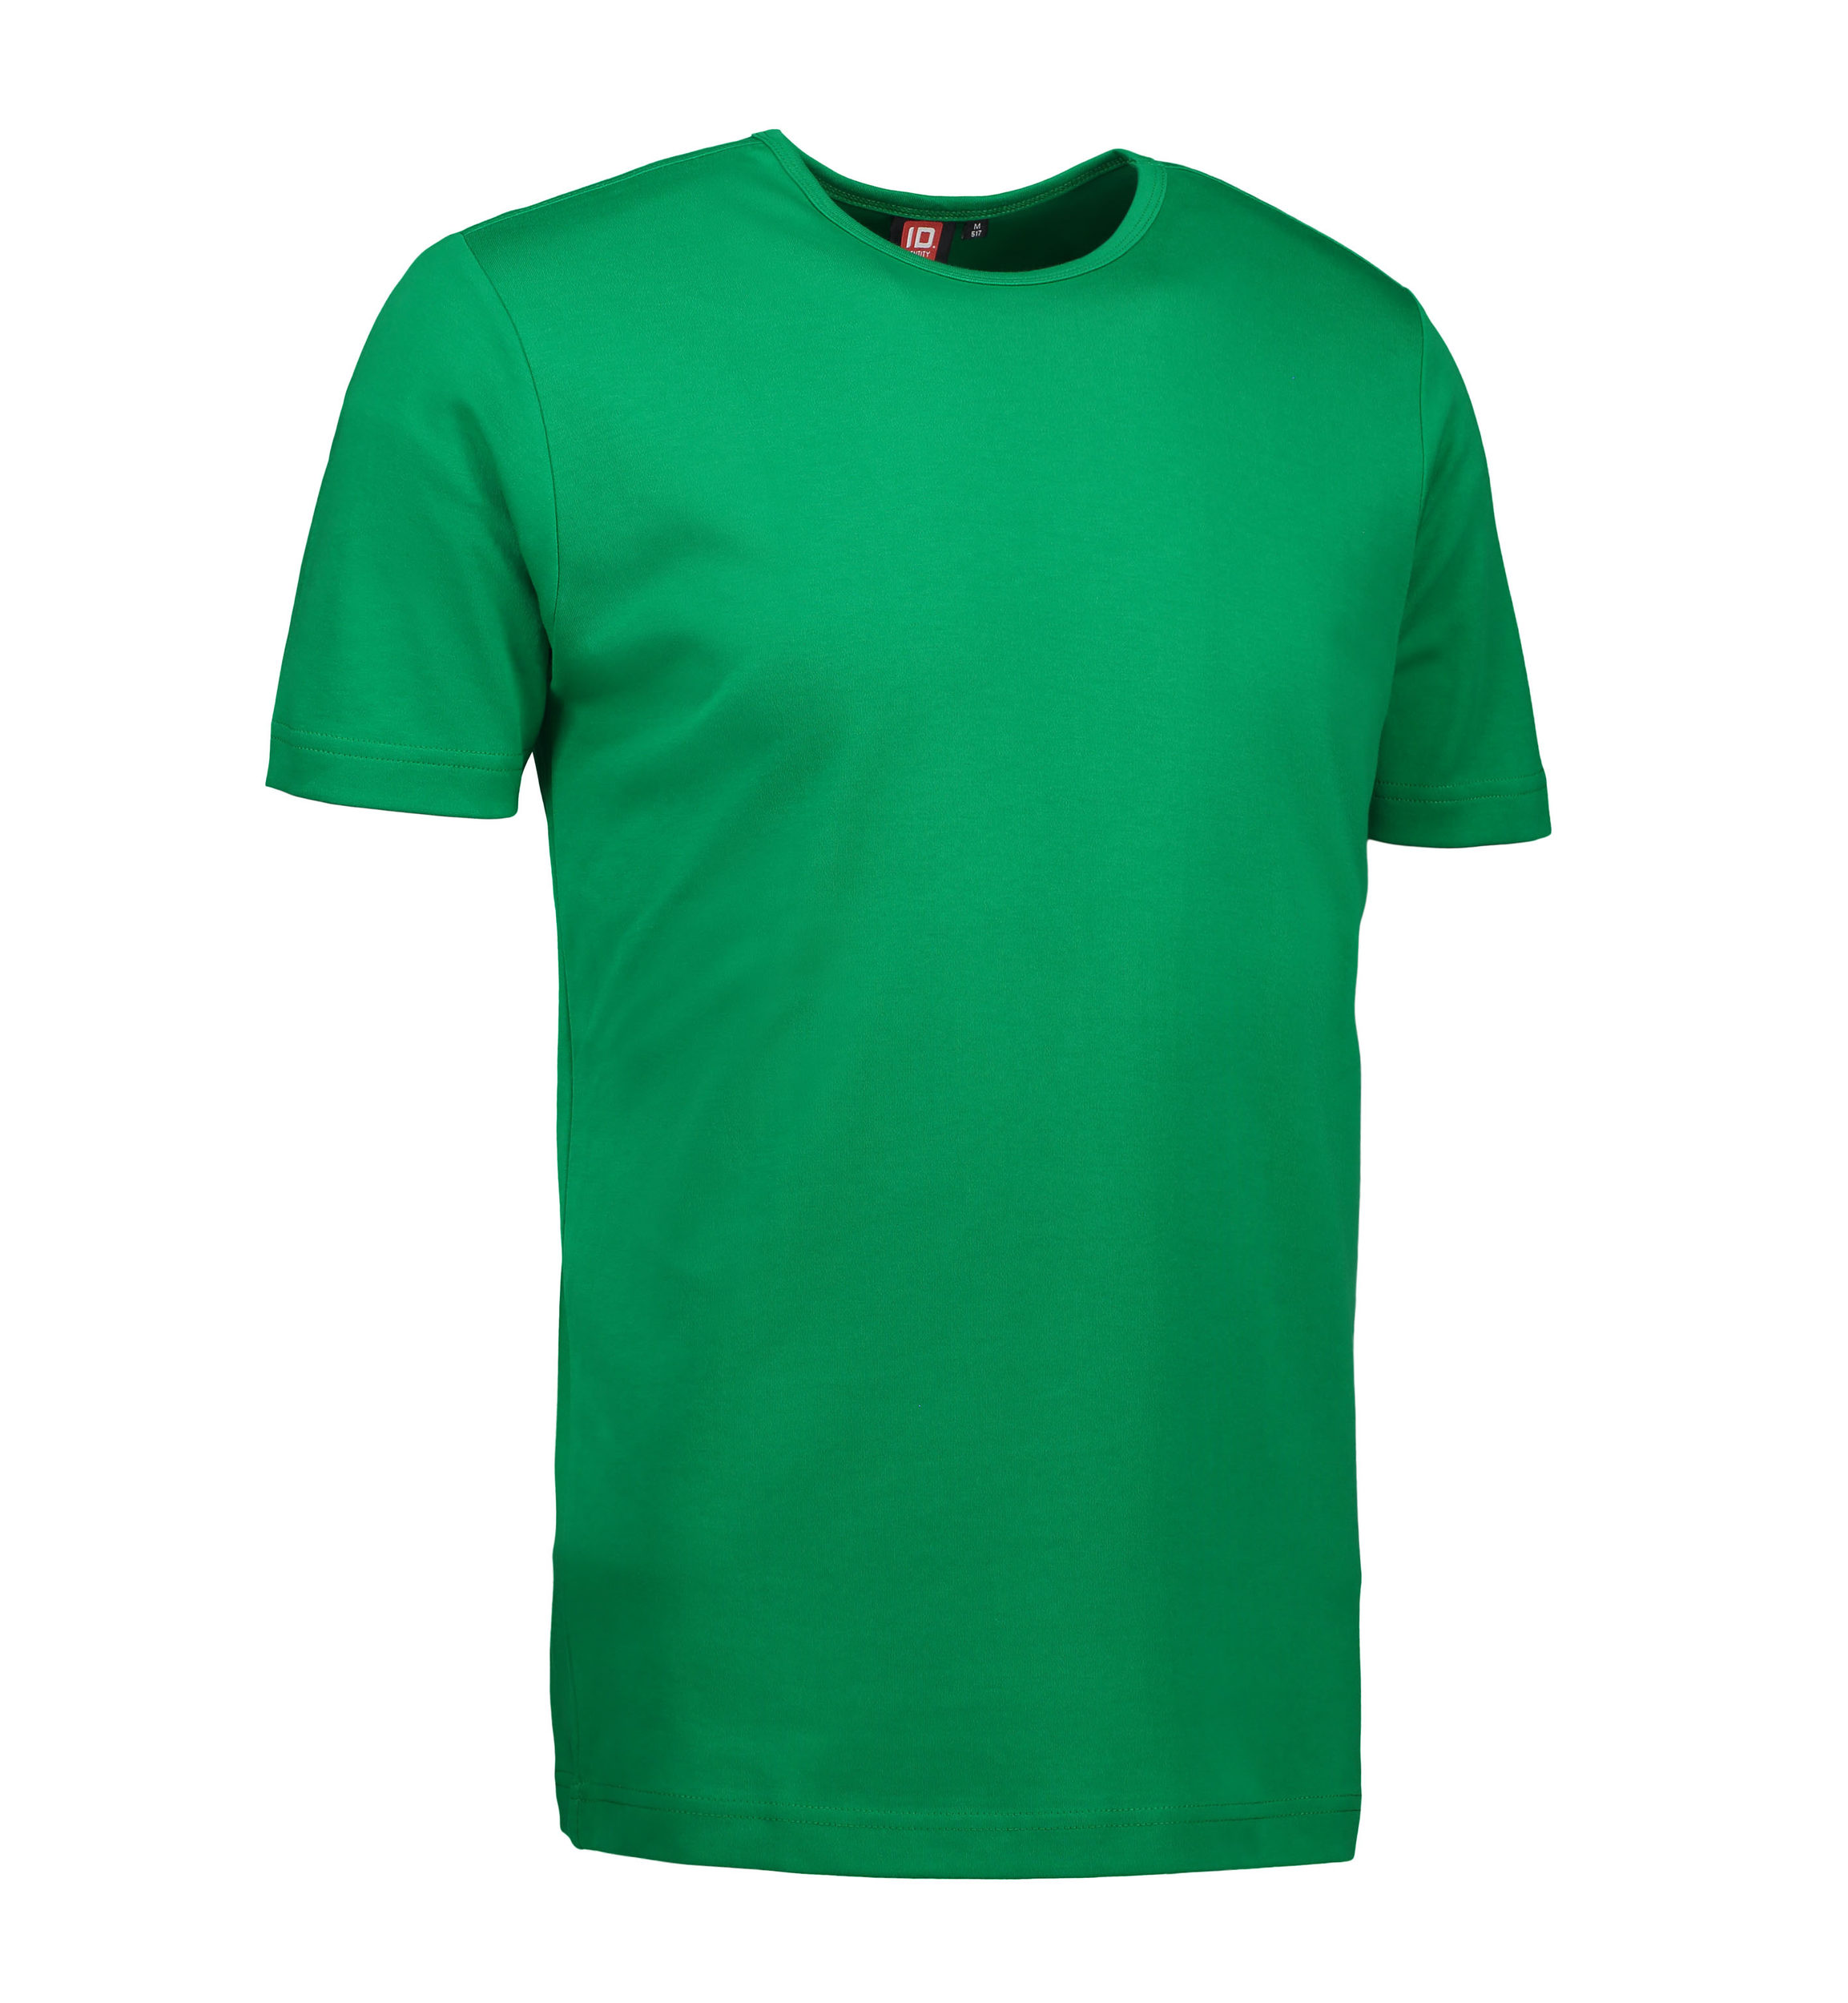 Billede af Grøn t-shirt med rund hals til mænd - 3XL hos Sygeplejebutikken.dk